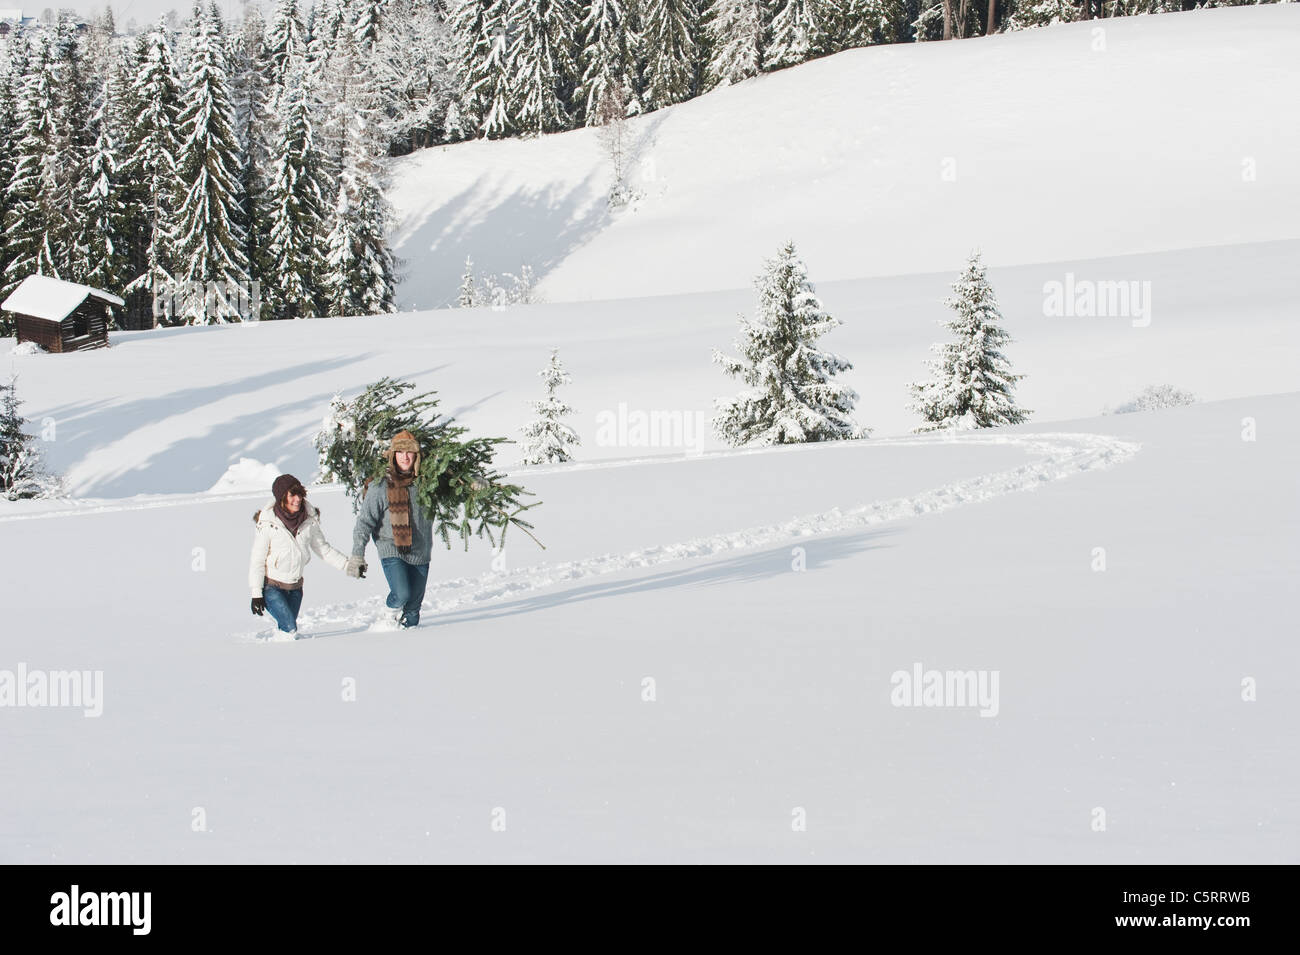 Österreich, Salzburger Land, Flachau, junger Mann und Frau mit Weihnachtsbaum im Schnee Stockfoto